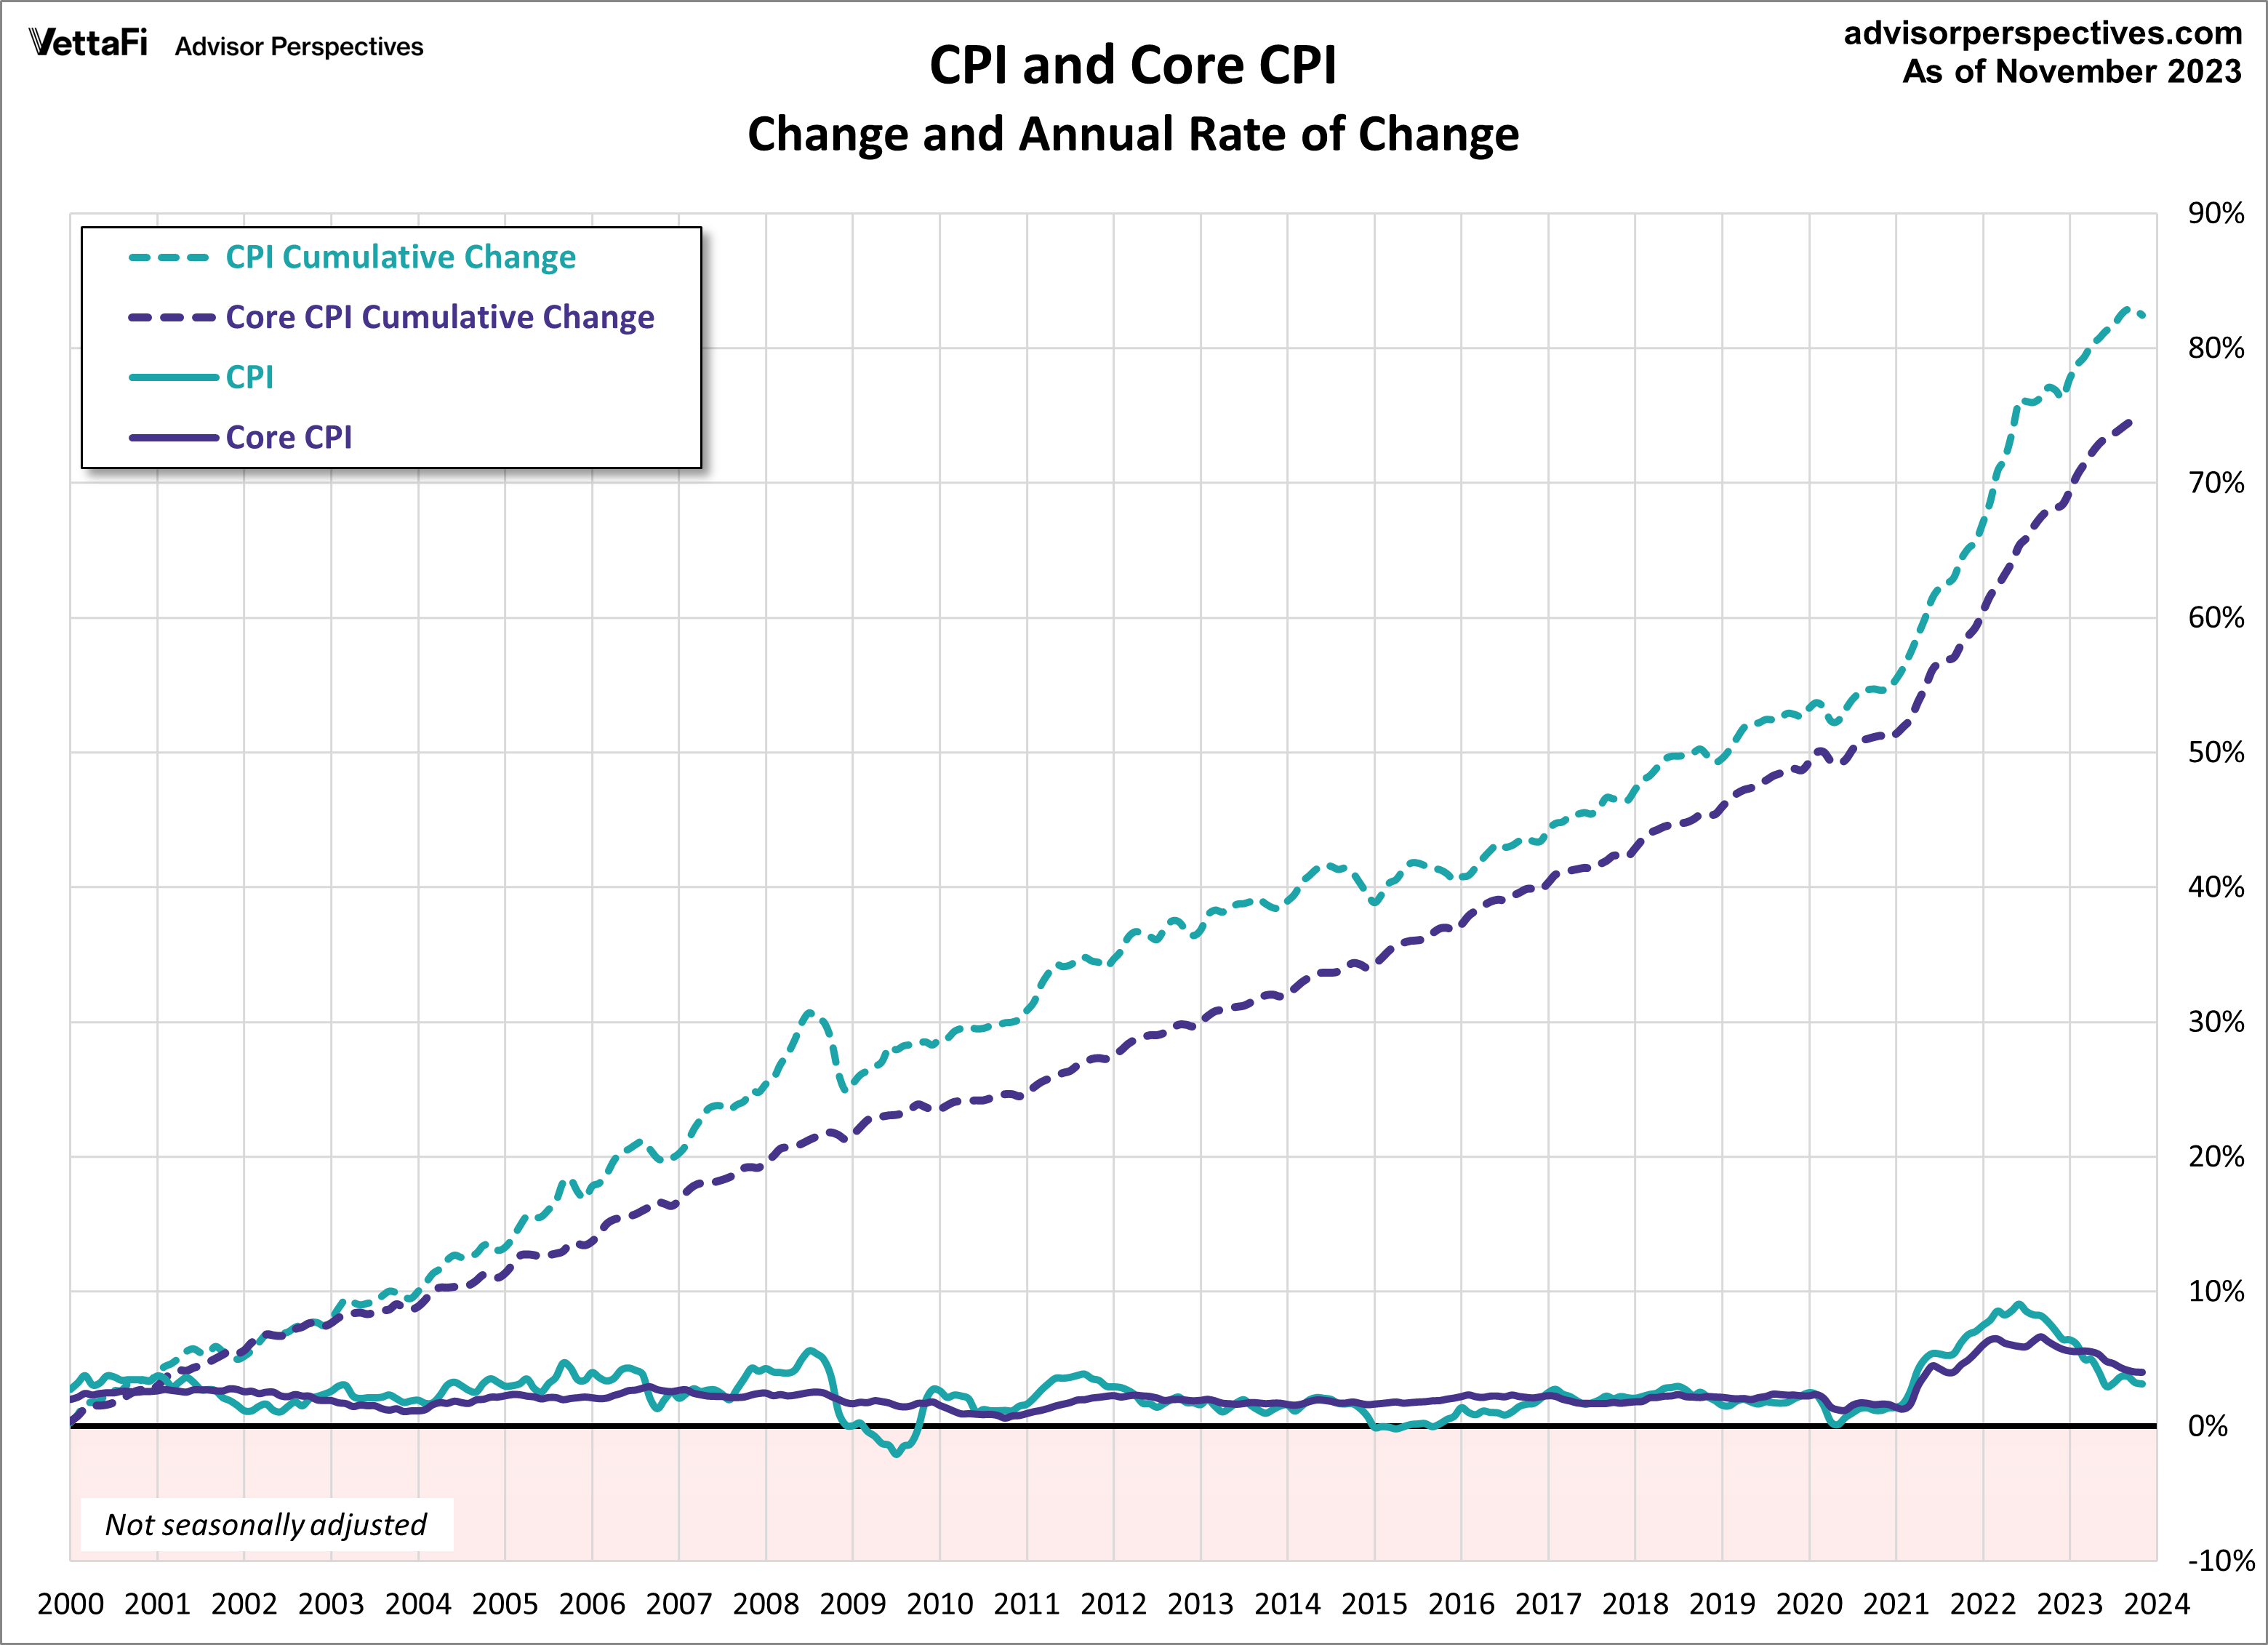 CPI and Core CPI since 2000